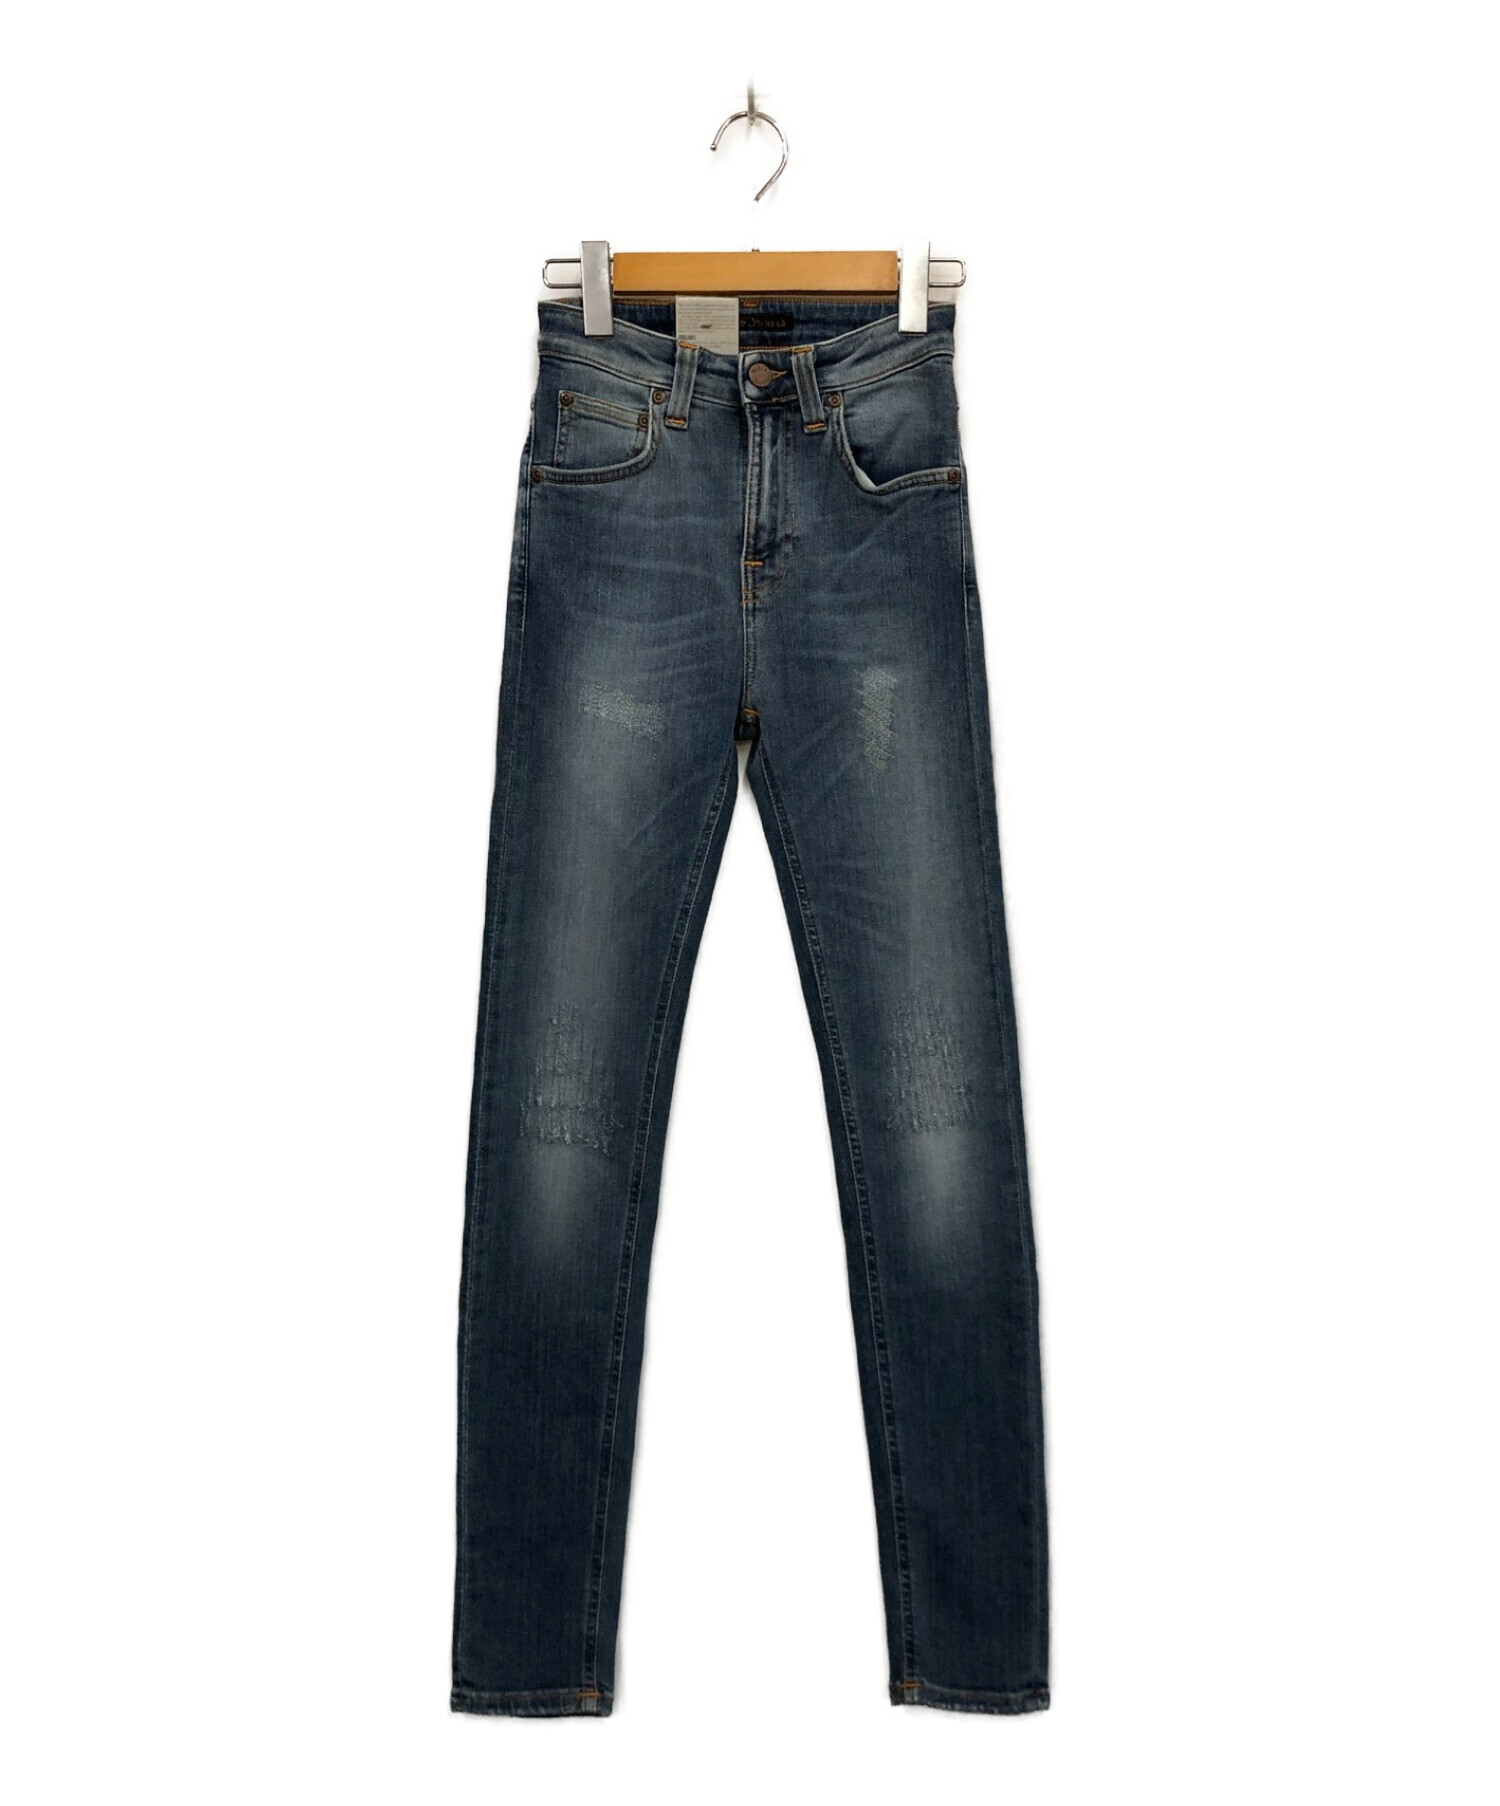 Nudie Jeans デニム THIN FINN 31×32 イタリア製 - デニム/ジーンズ